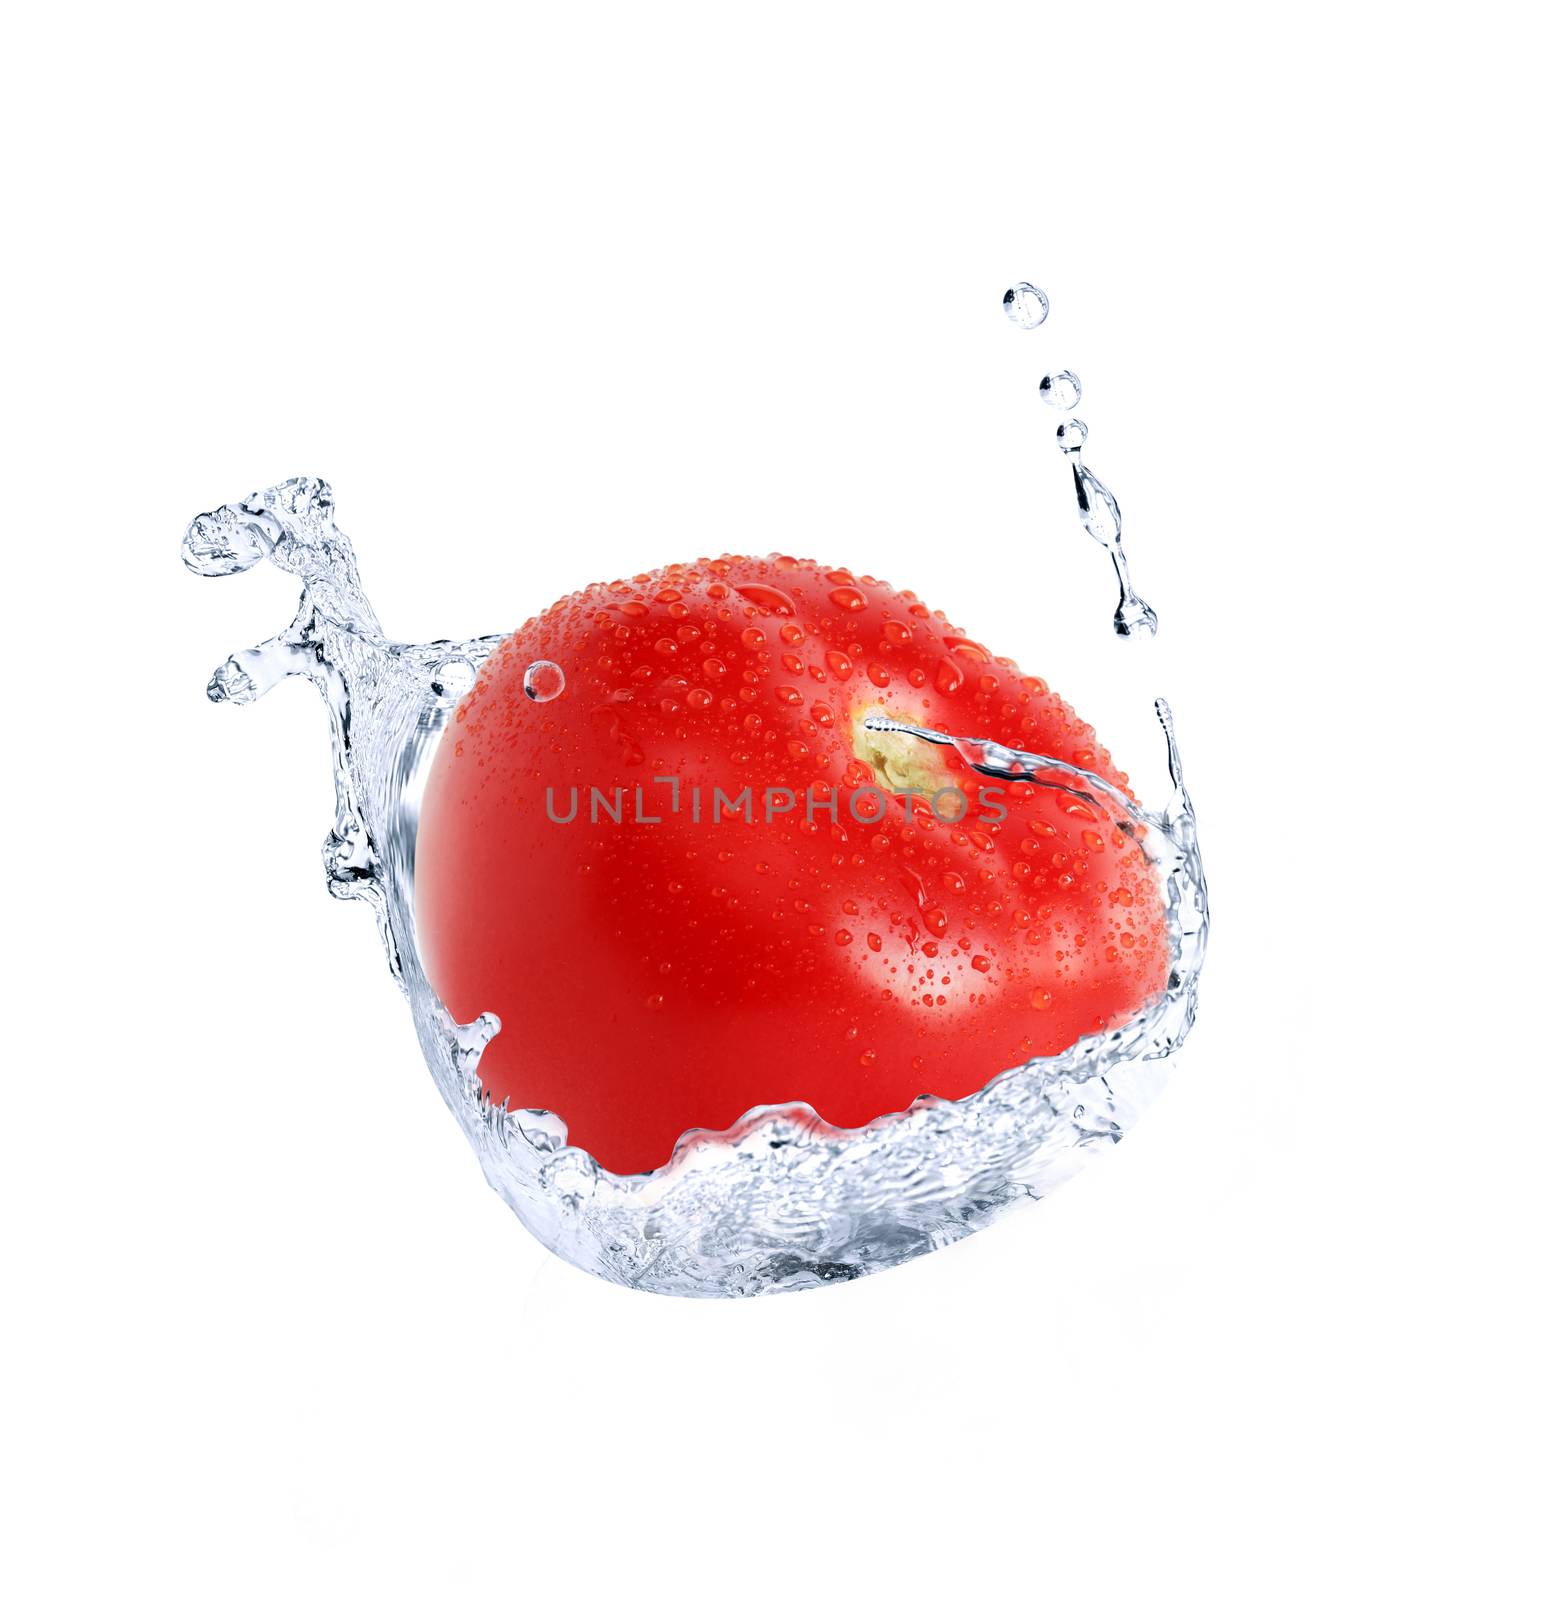 Freshness red tomato inside water splash against white background